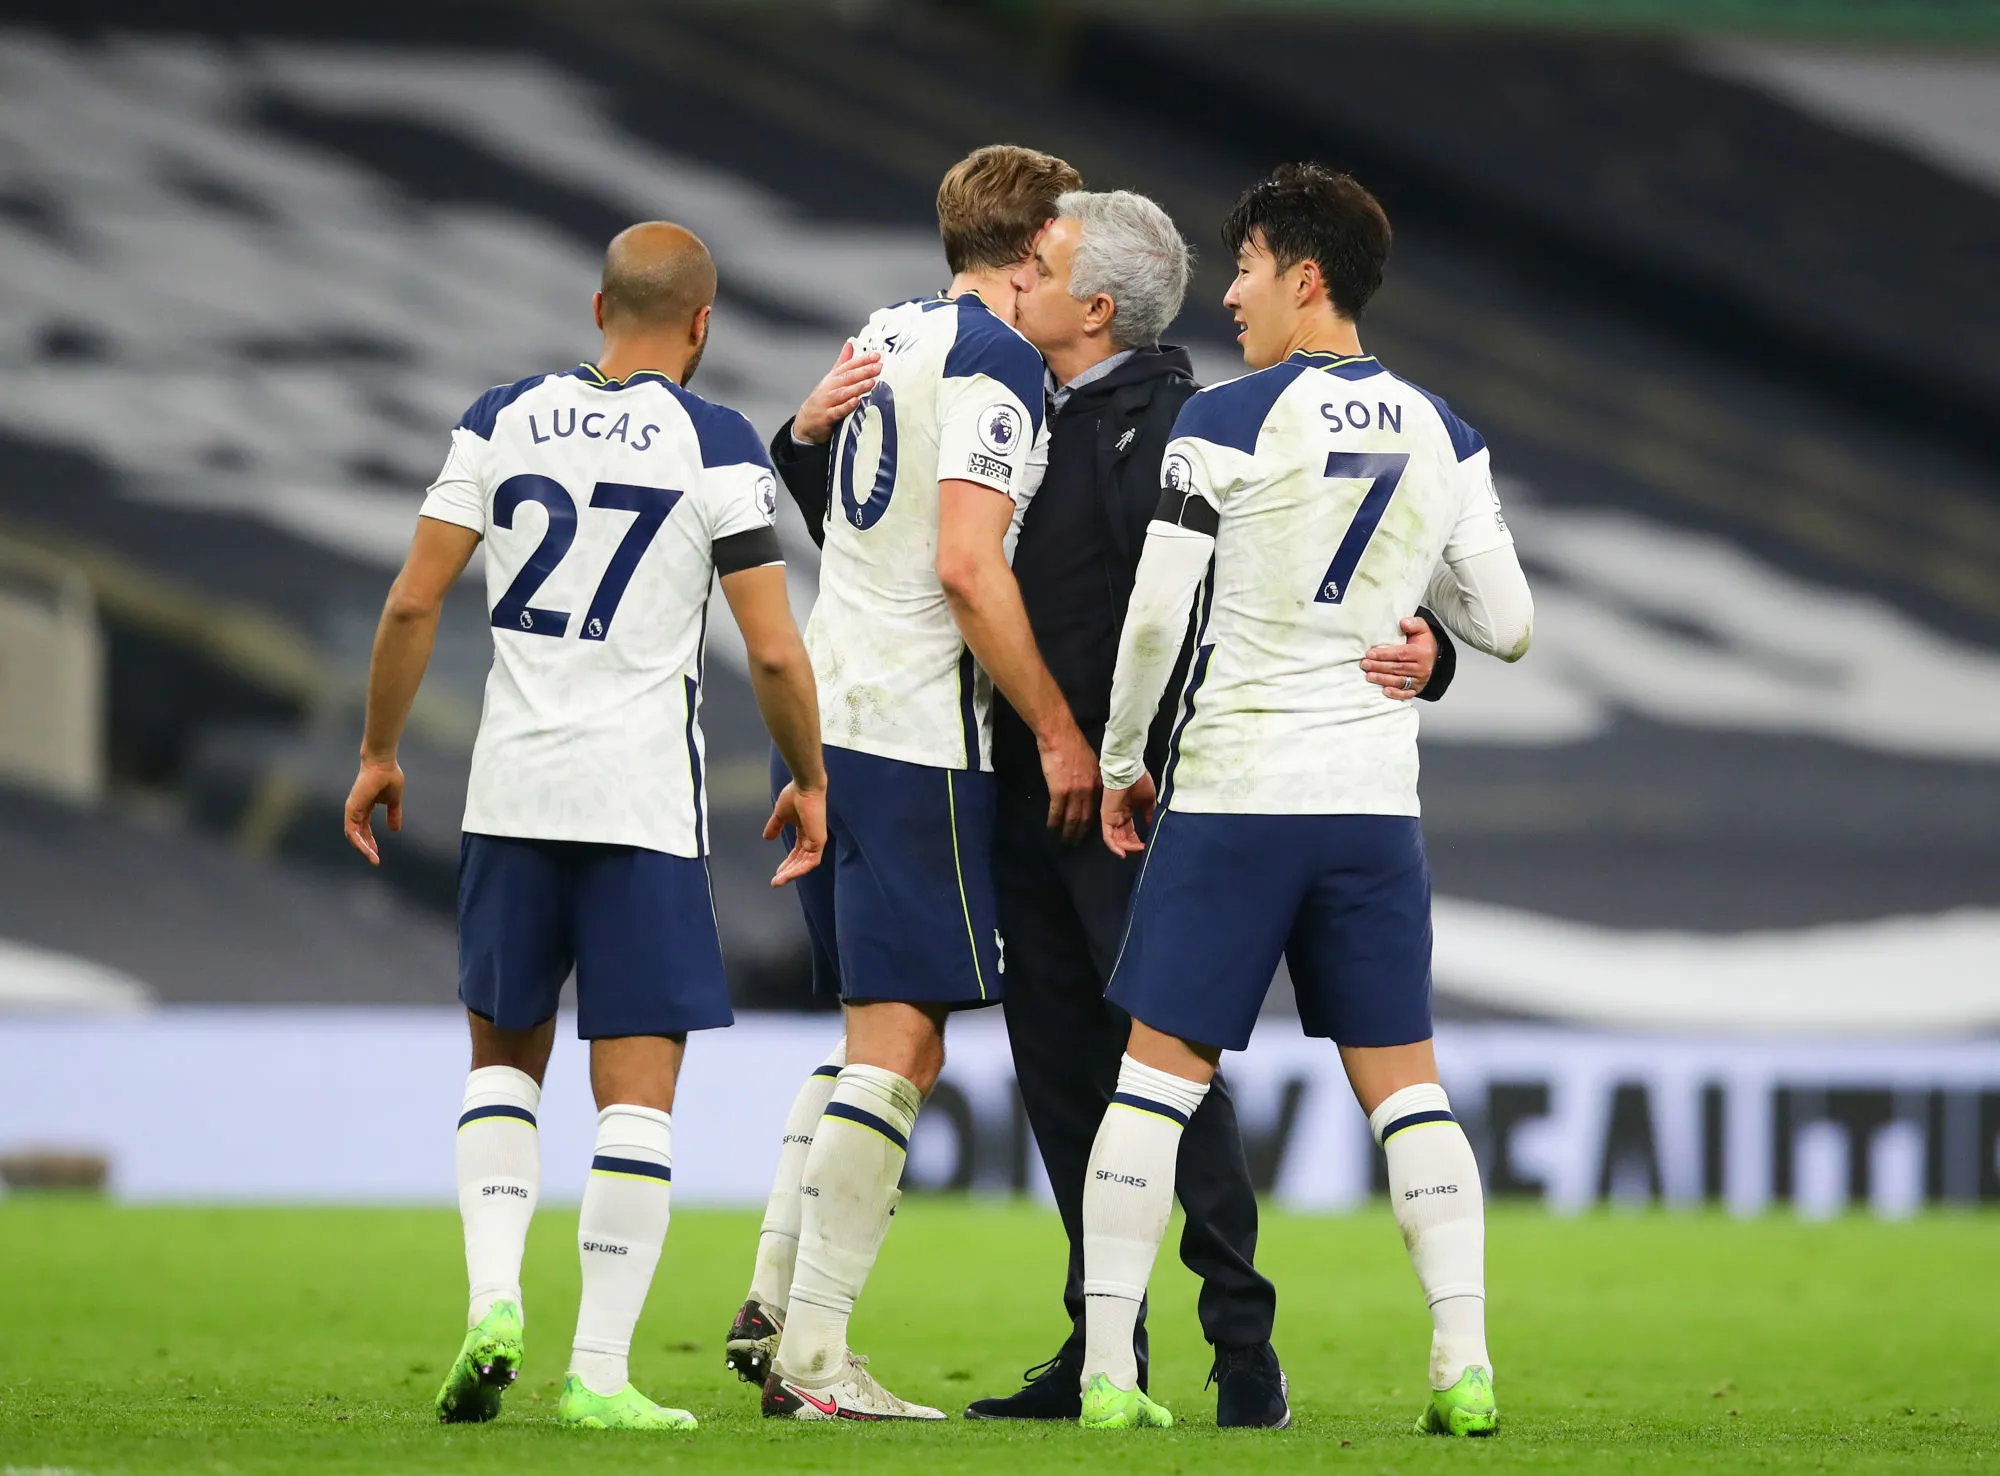 Pronostic Wycombe Wanderers Tottenham : Analyse, cotes et prono du match de FA Cup